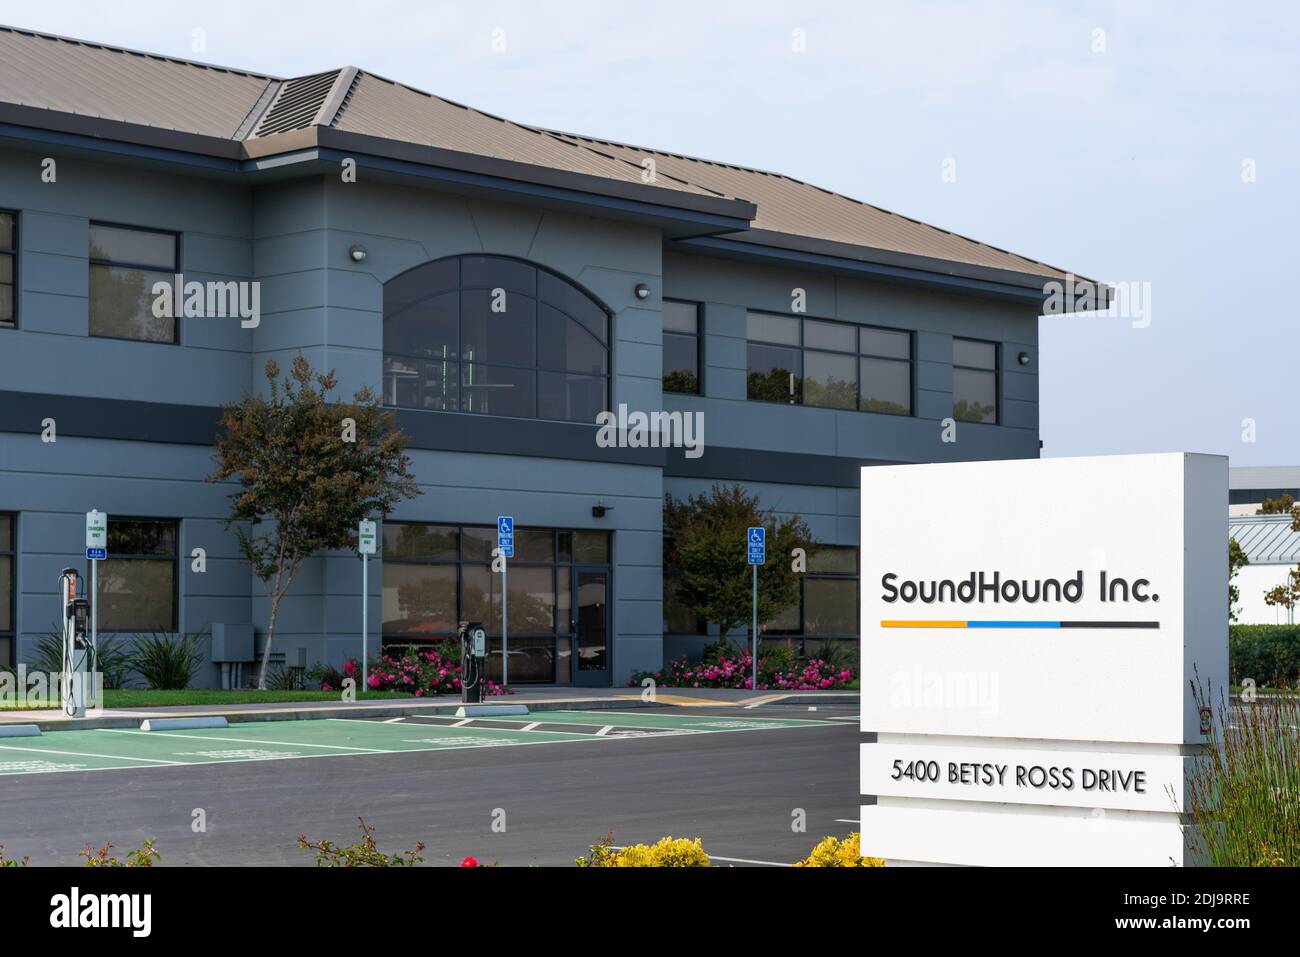 Oct 8, 2020 Santa Clara / CA / USA - Soundsabon Inc sede en Silicon Valley; SoundHound Inc. Es un reconocimiento de audio y voz Foto de stock